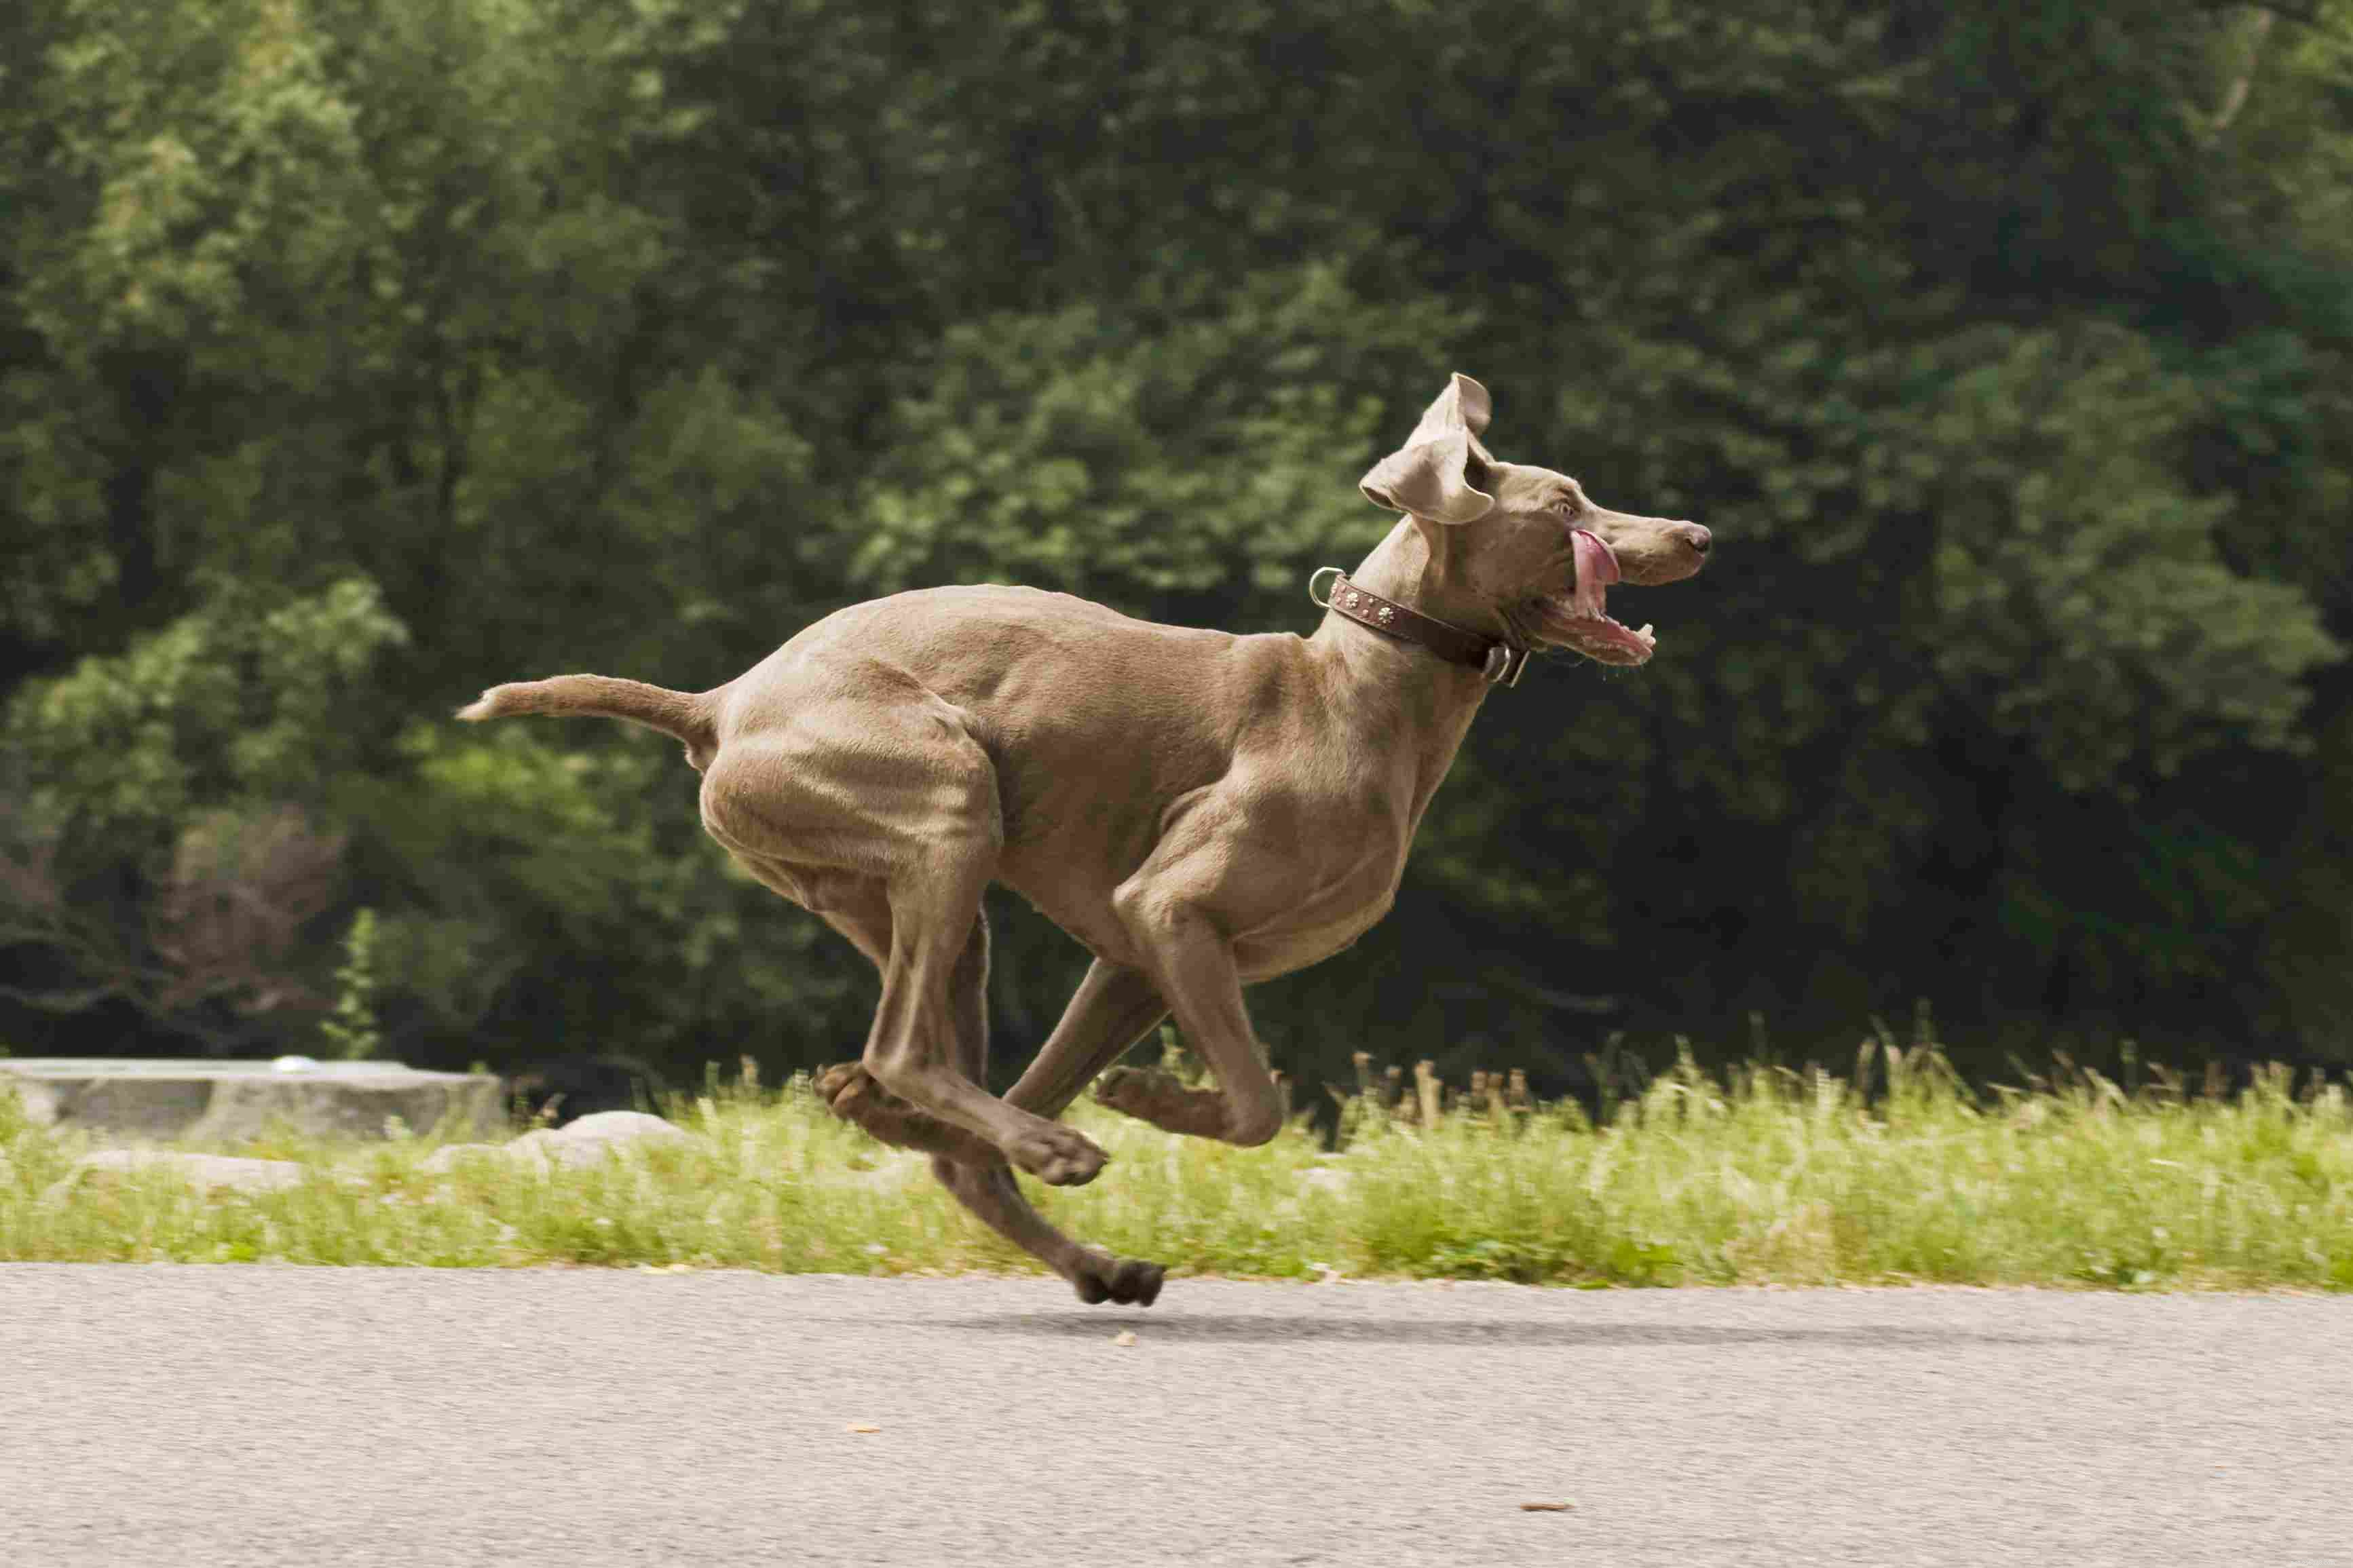 10 migliori razze di cani energici per persone attive